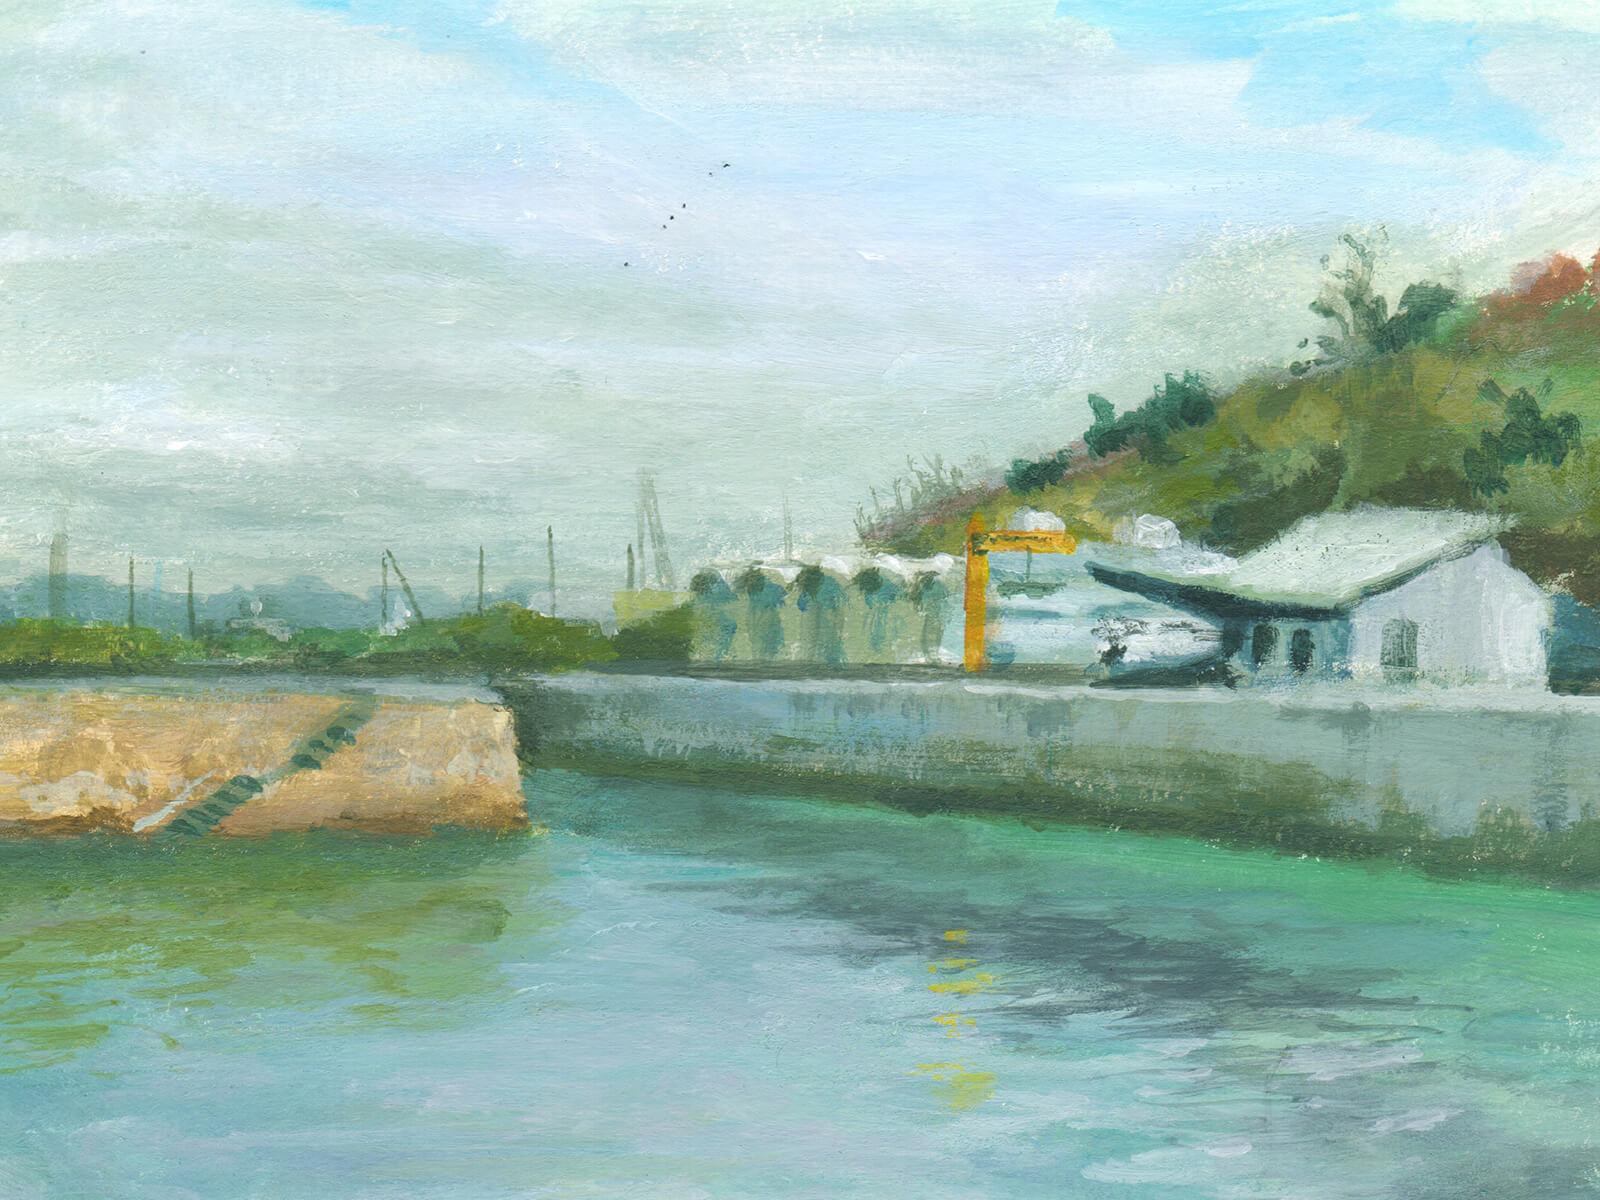 Un canal con un muelle de piedra e instalaciones de apoyo para botes sobre unas nubes blancas por encima y agua de color claro debajo.